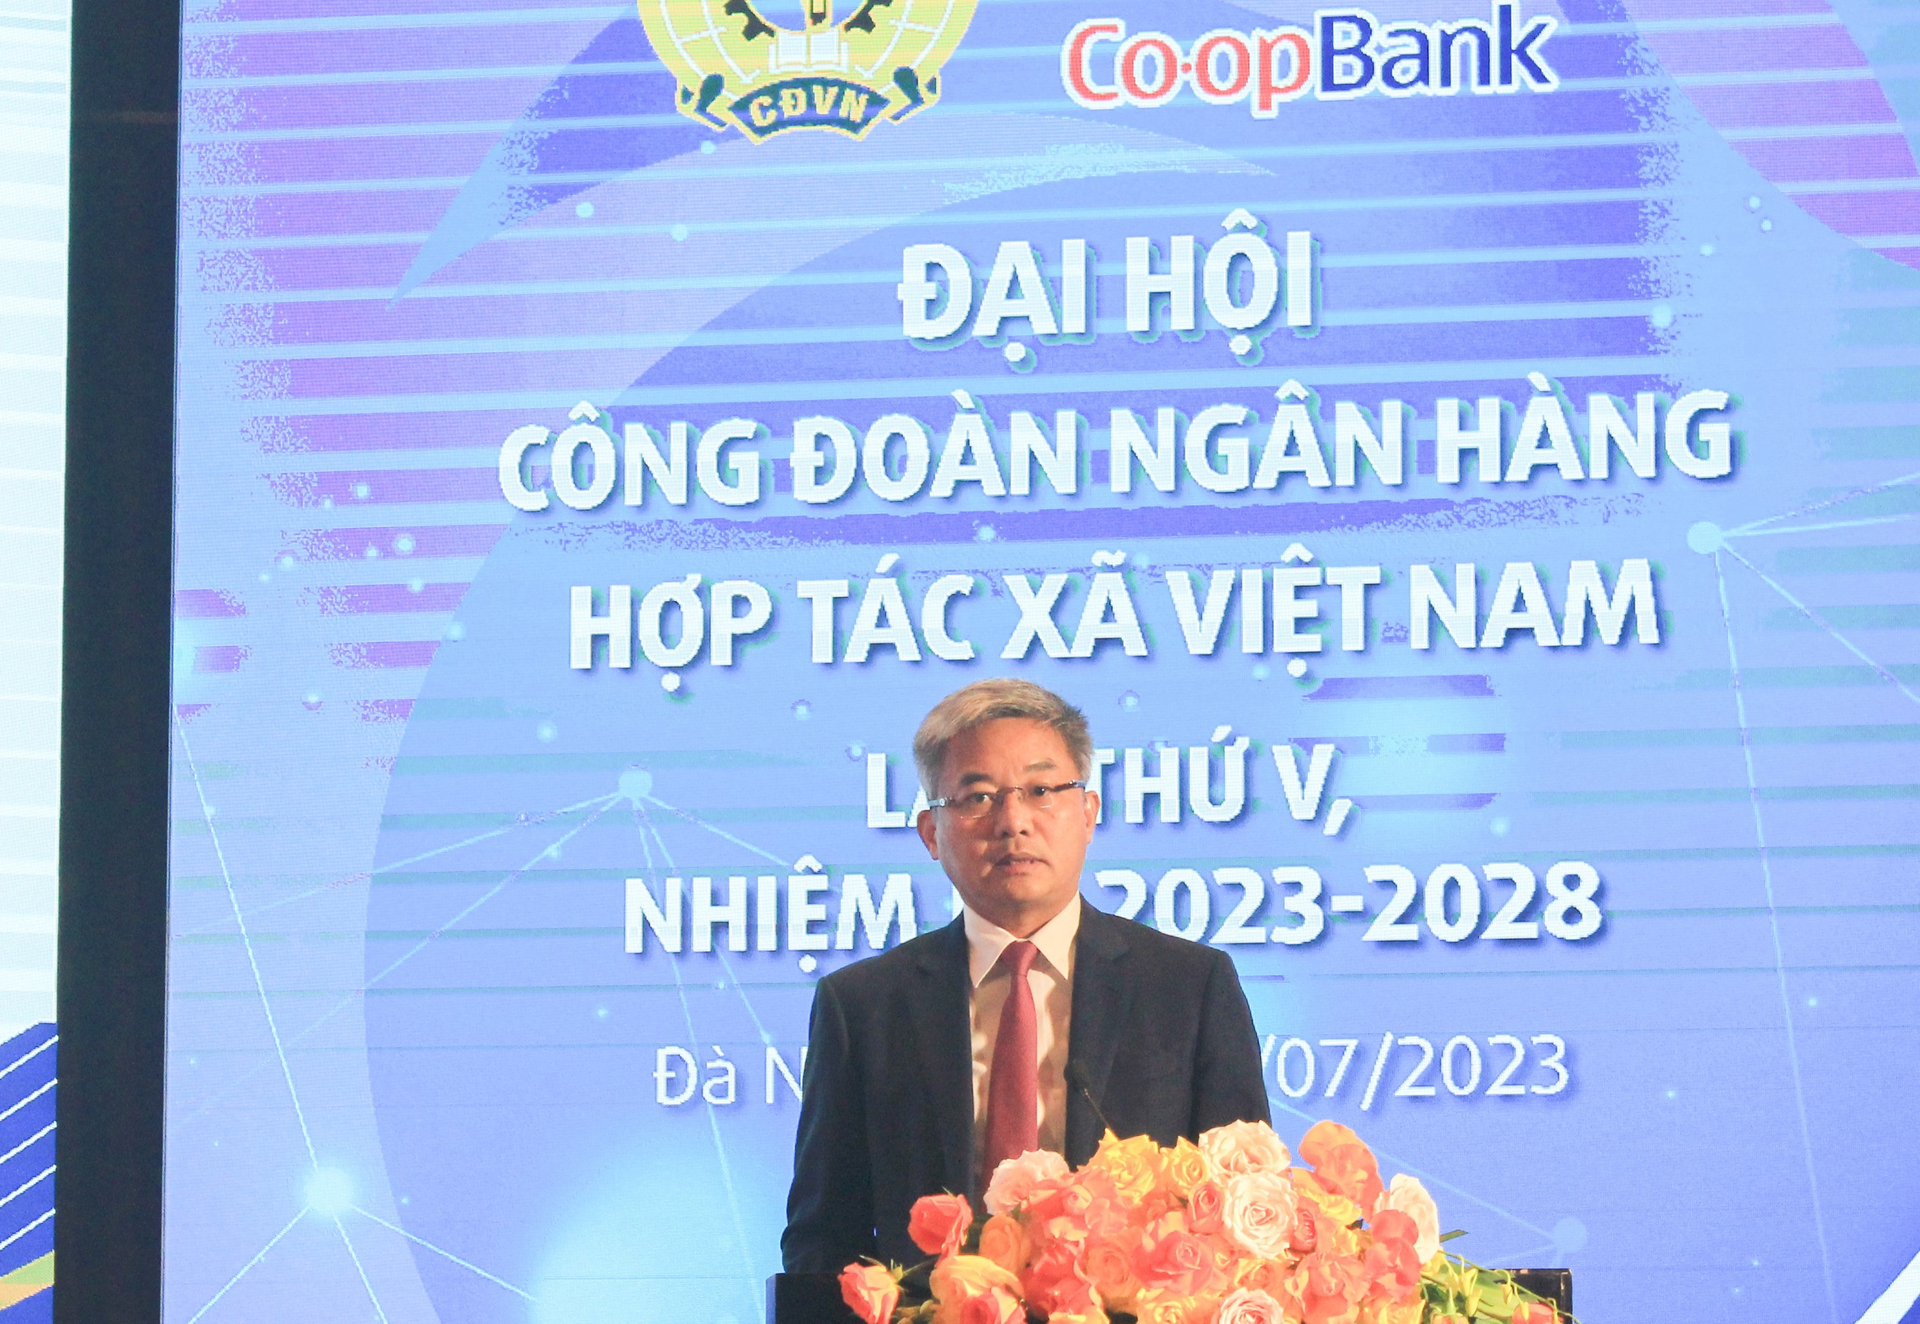 Ông Nguyễn Quốc Cường, Chủ tịch HĐQT Co-opBank phát biểu chỉ đạo tại Đại hội.